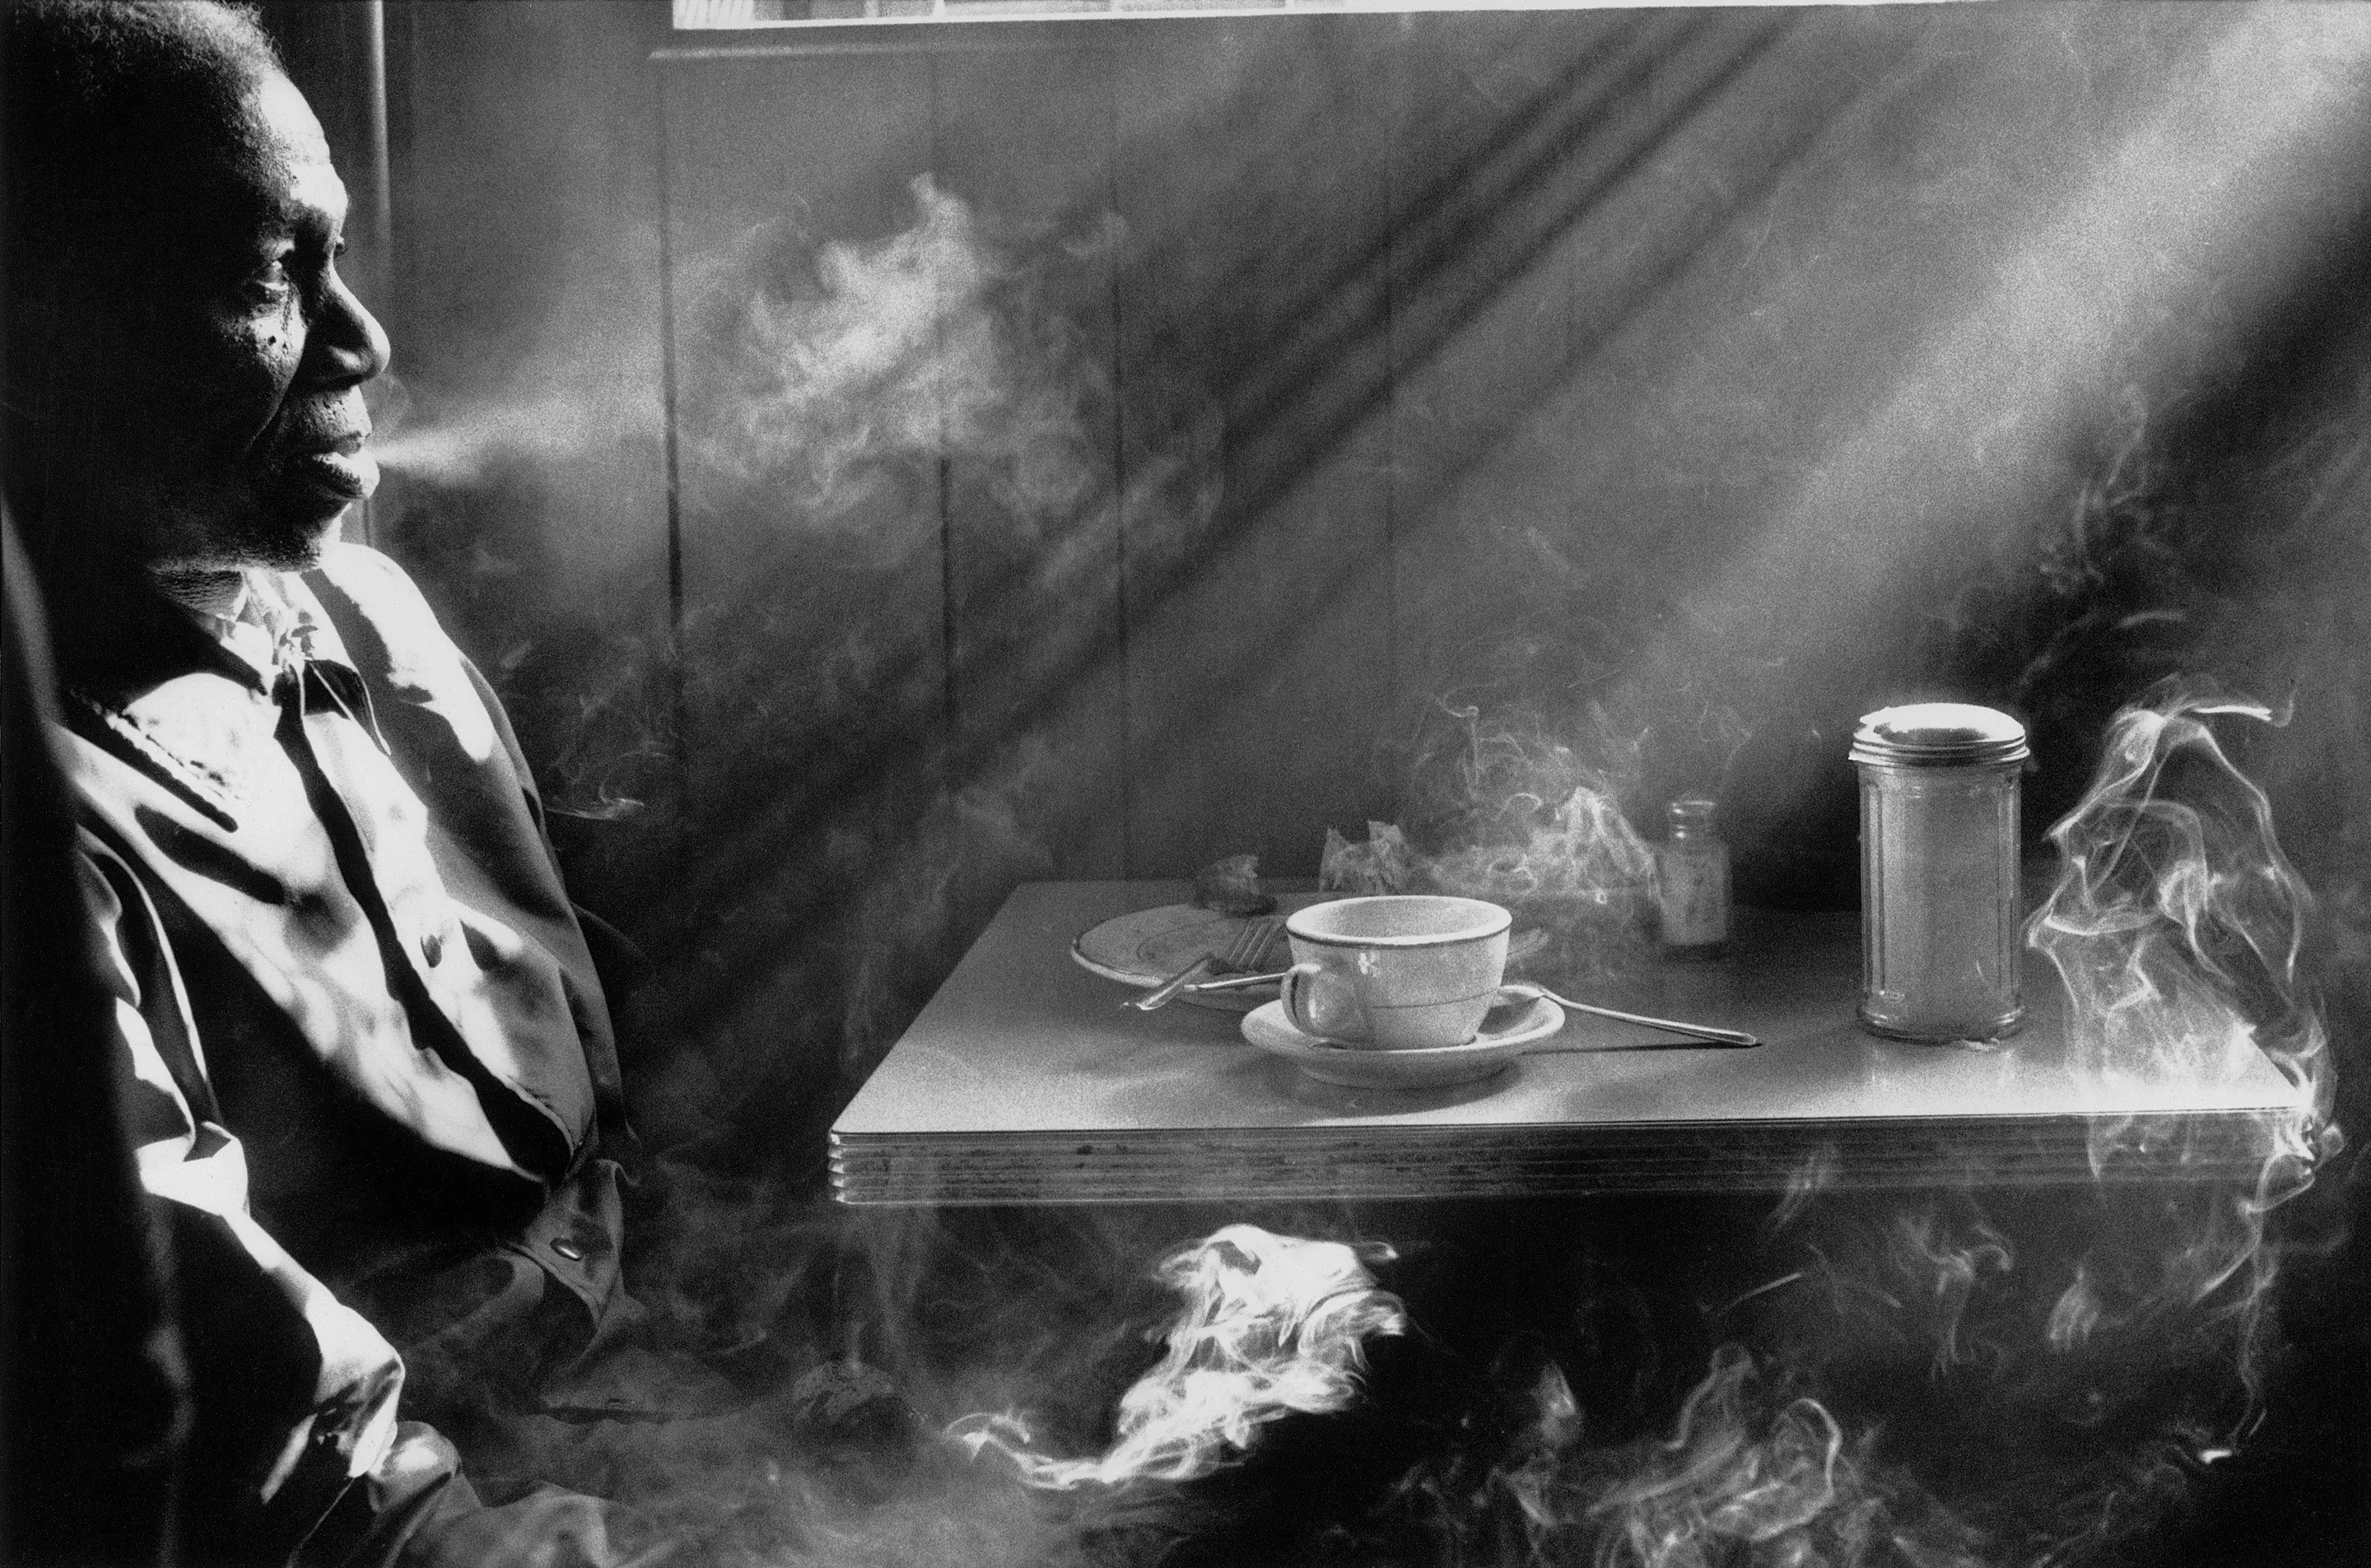 Мужчина курит в закусочной, 1974. Фотограф Гарольд Файнштейн 